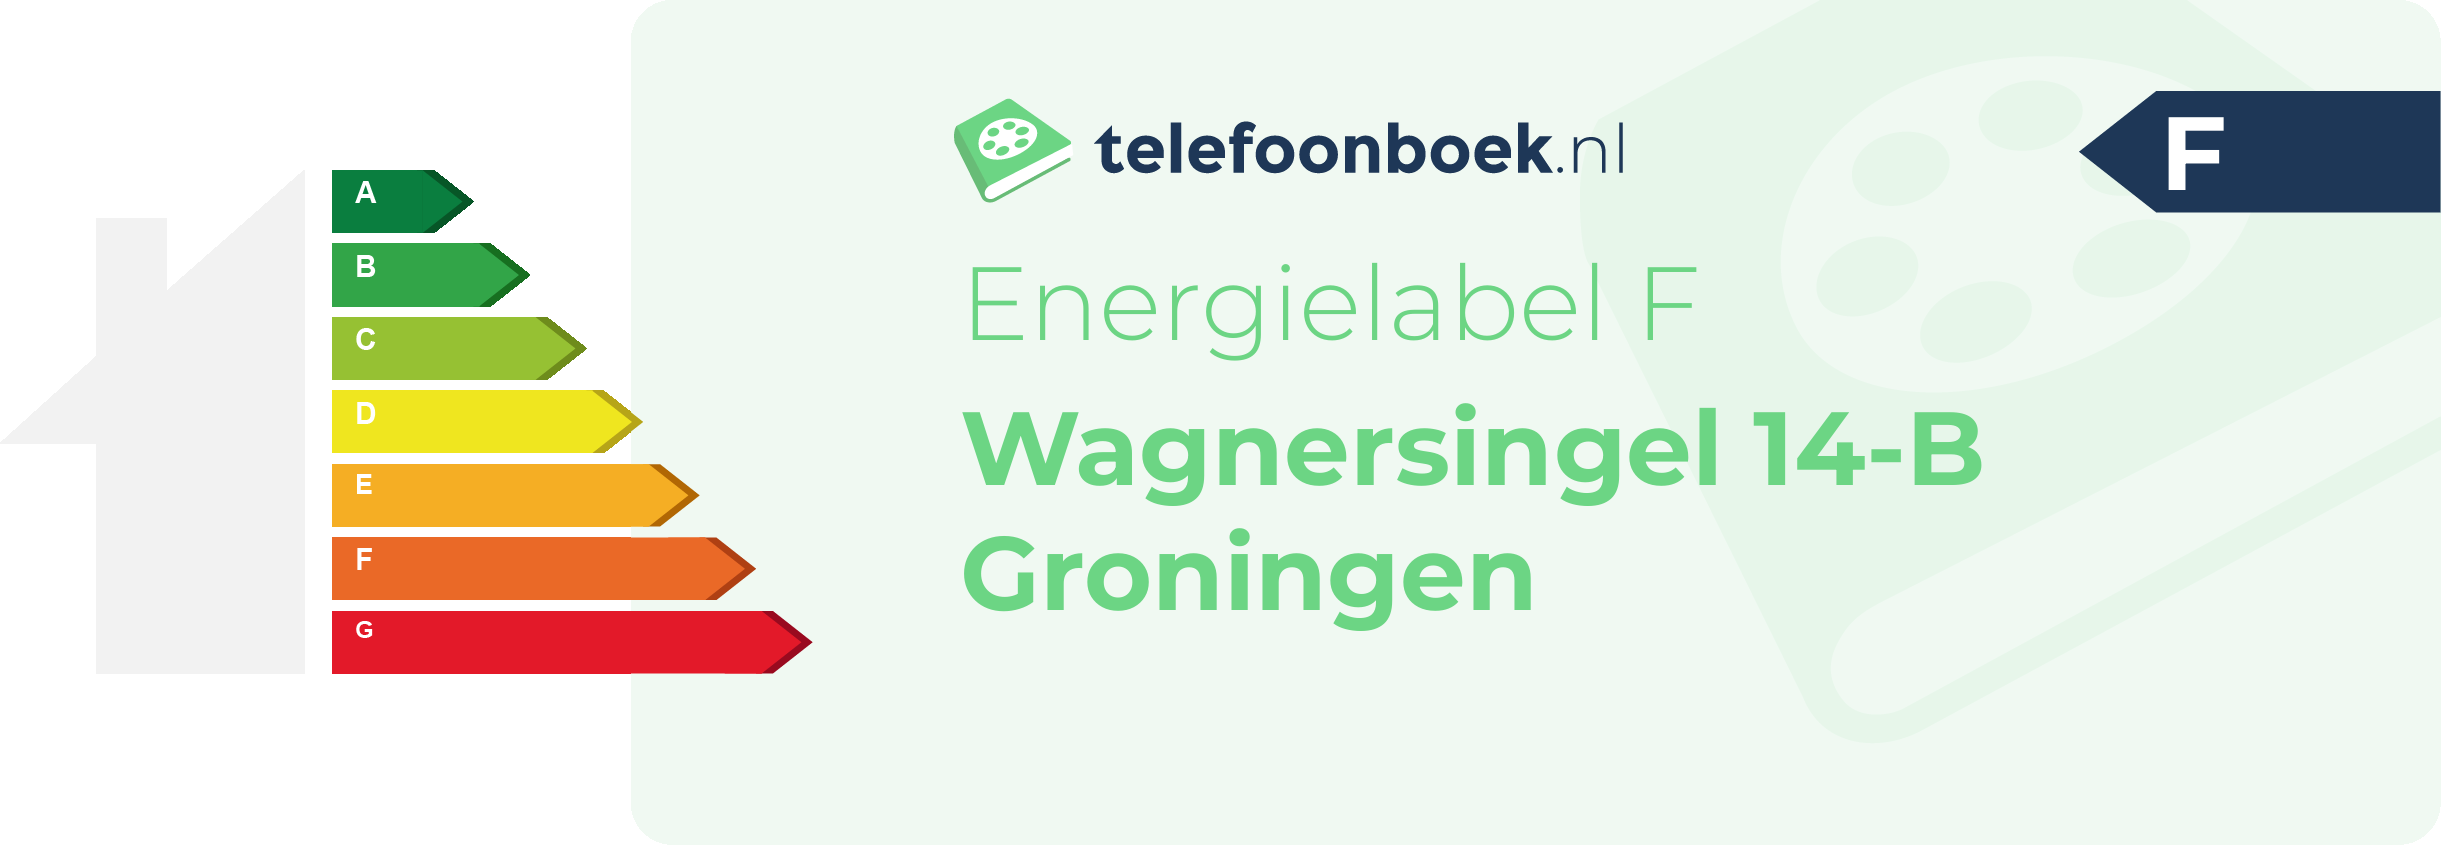 Energielabel Wagnersingel 14-B Groningen